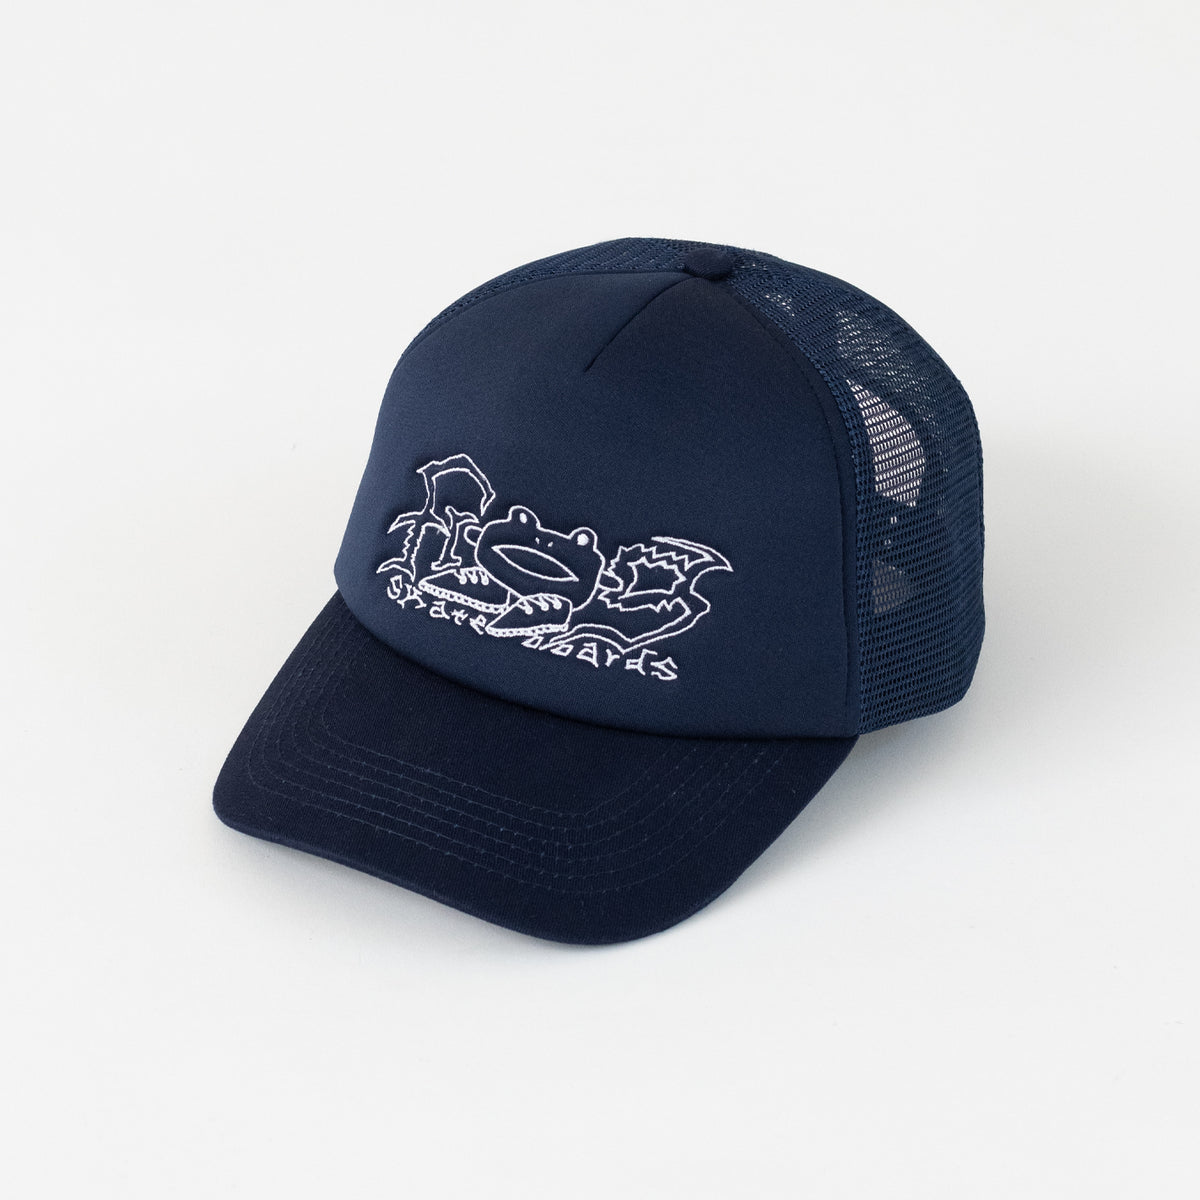 Big Shoes Trucker Hat(Navy)